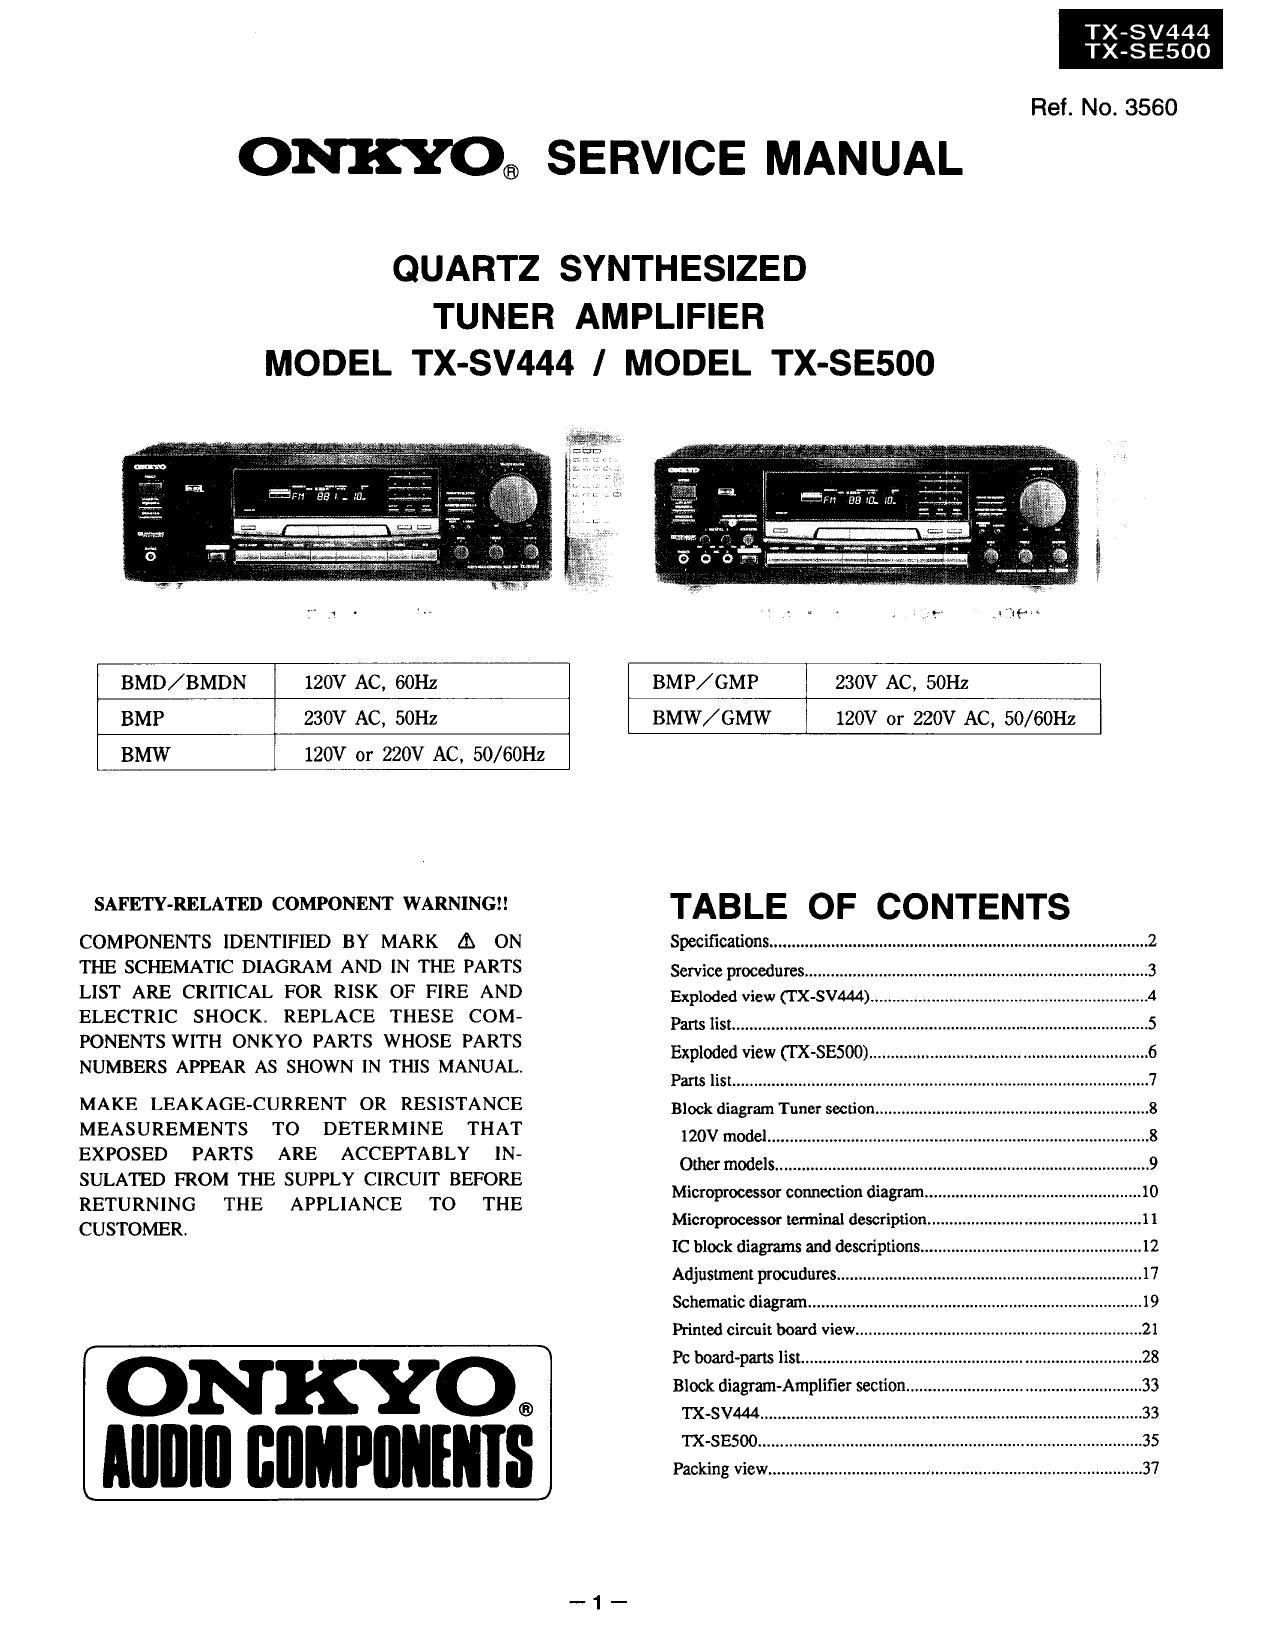 Onkyo TXSV 444 Service Manual